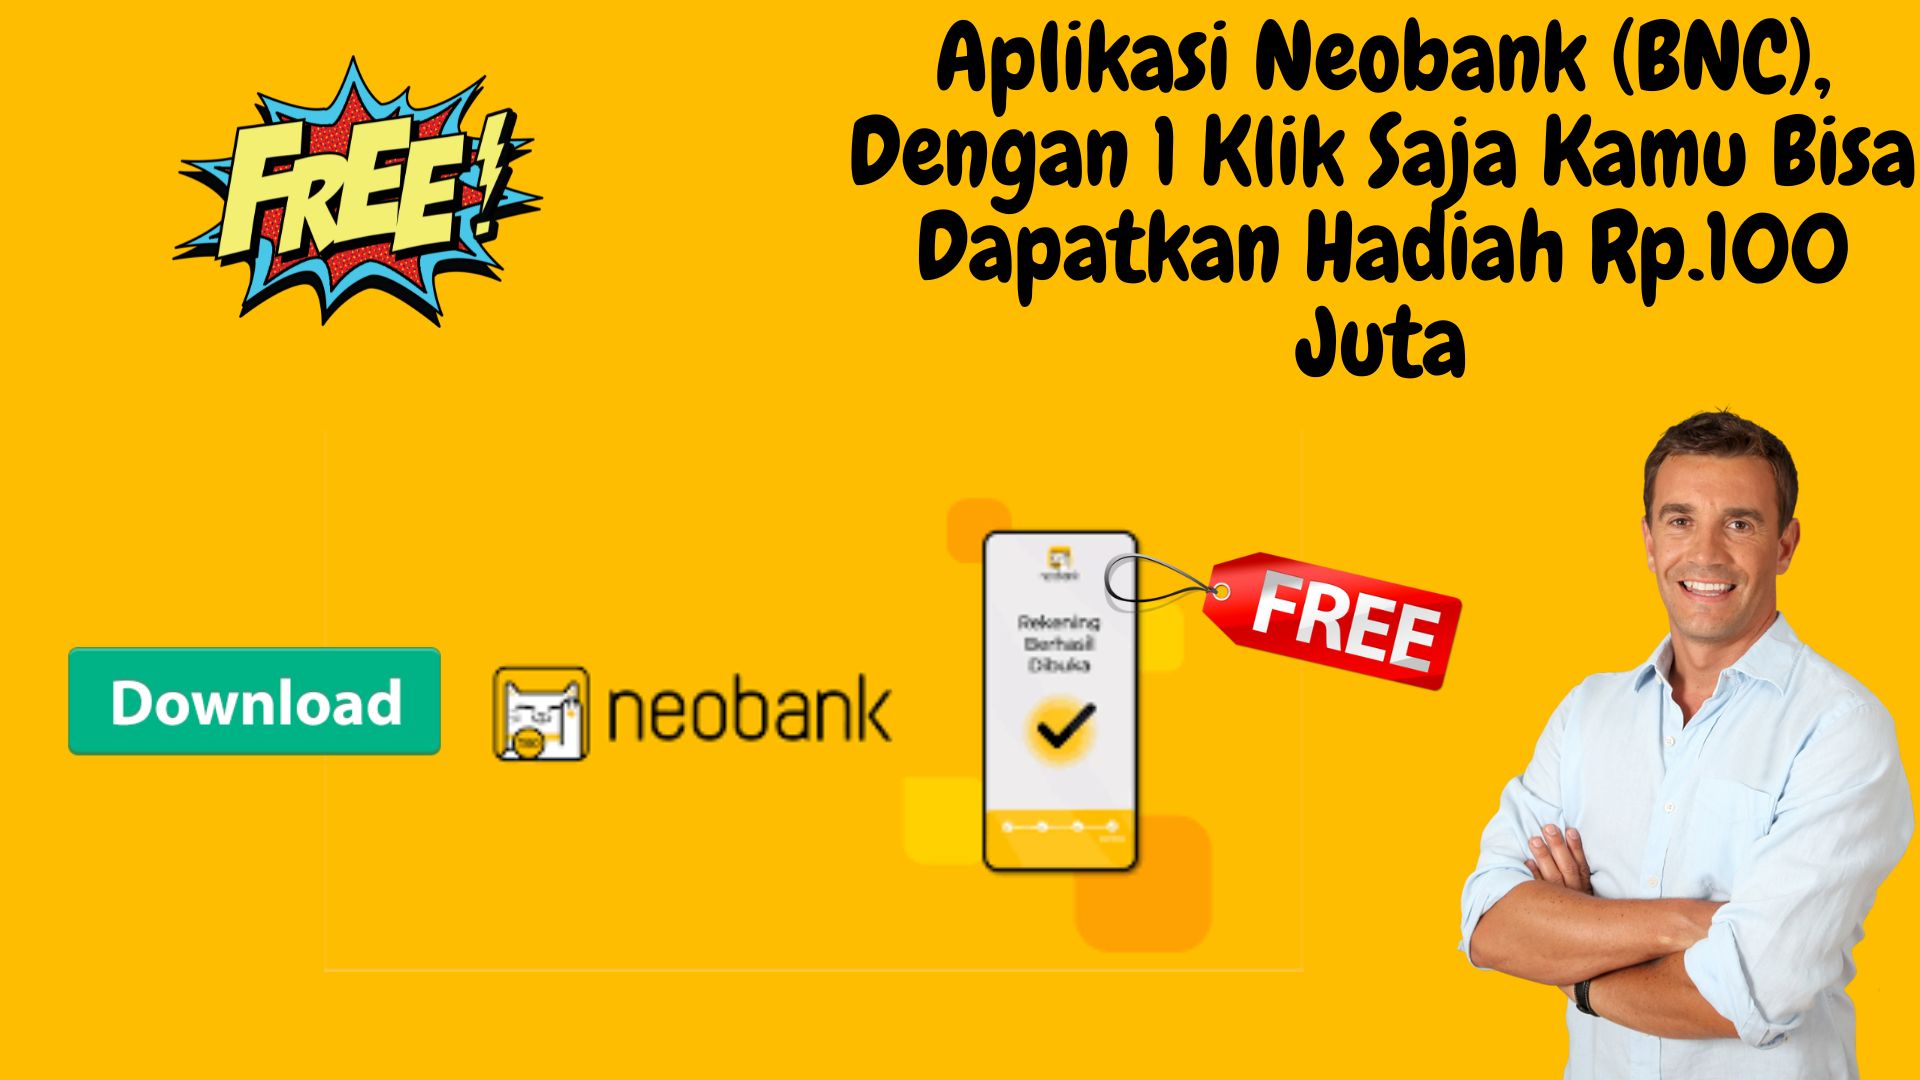 Aplikasi Neobank (Bnc), Dengan 1 Klik Saja Kamu Bisa Dapatkan Hadiah Rp.100 Juta